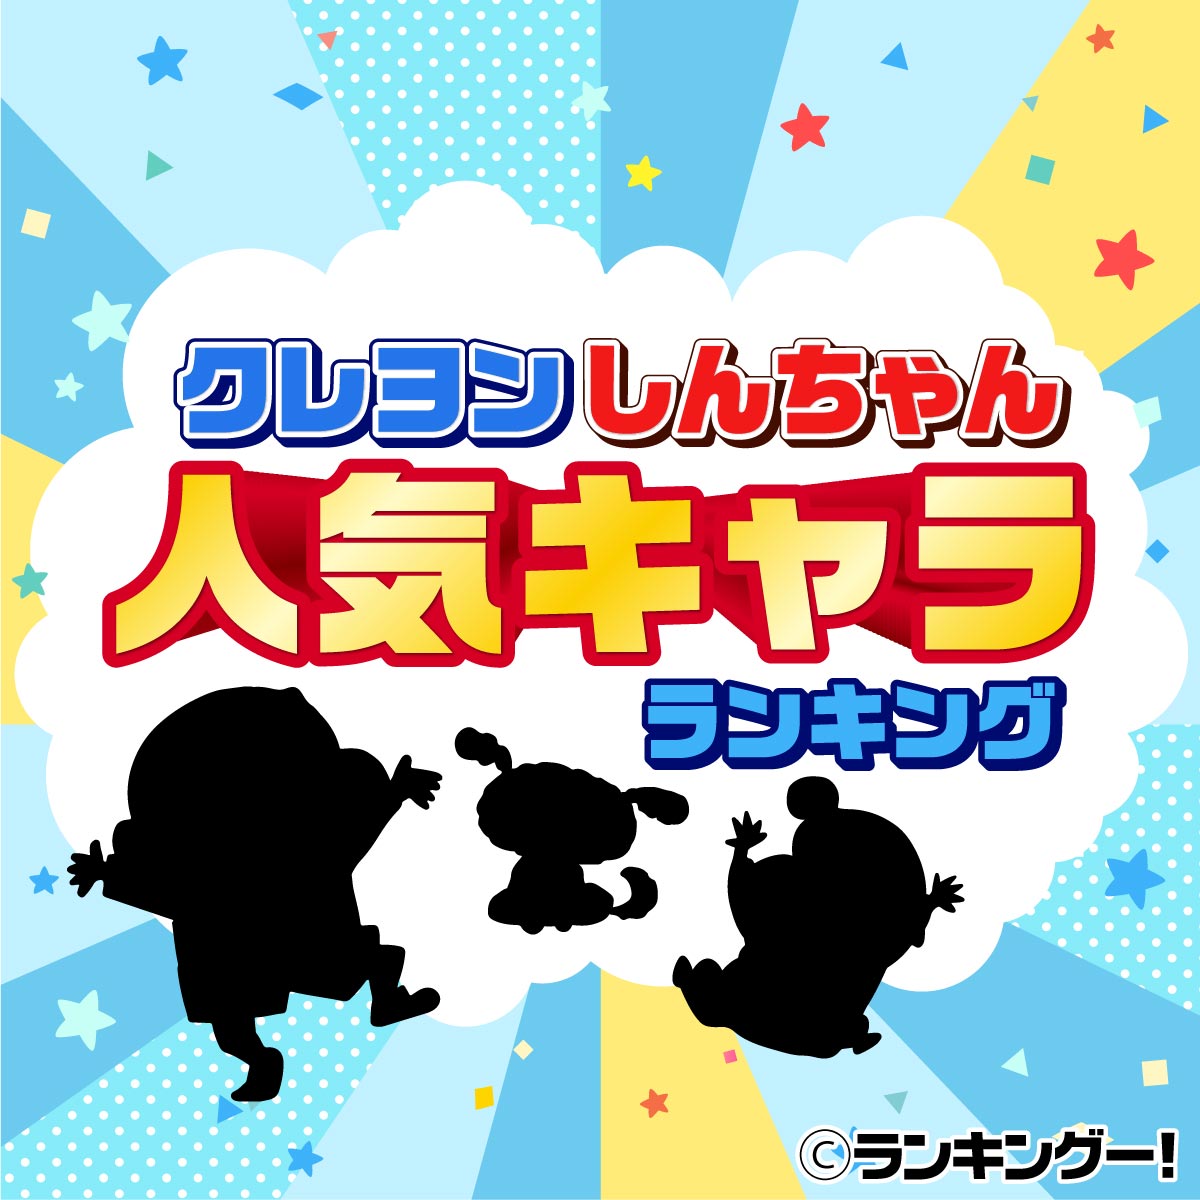 クレヨンしんちゃんキャラクター人気ランキングtop20 2020年最新版 6 8位 ランキングー